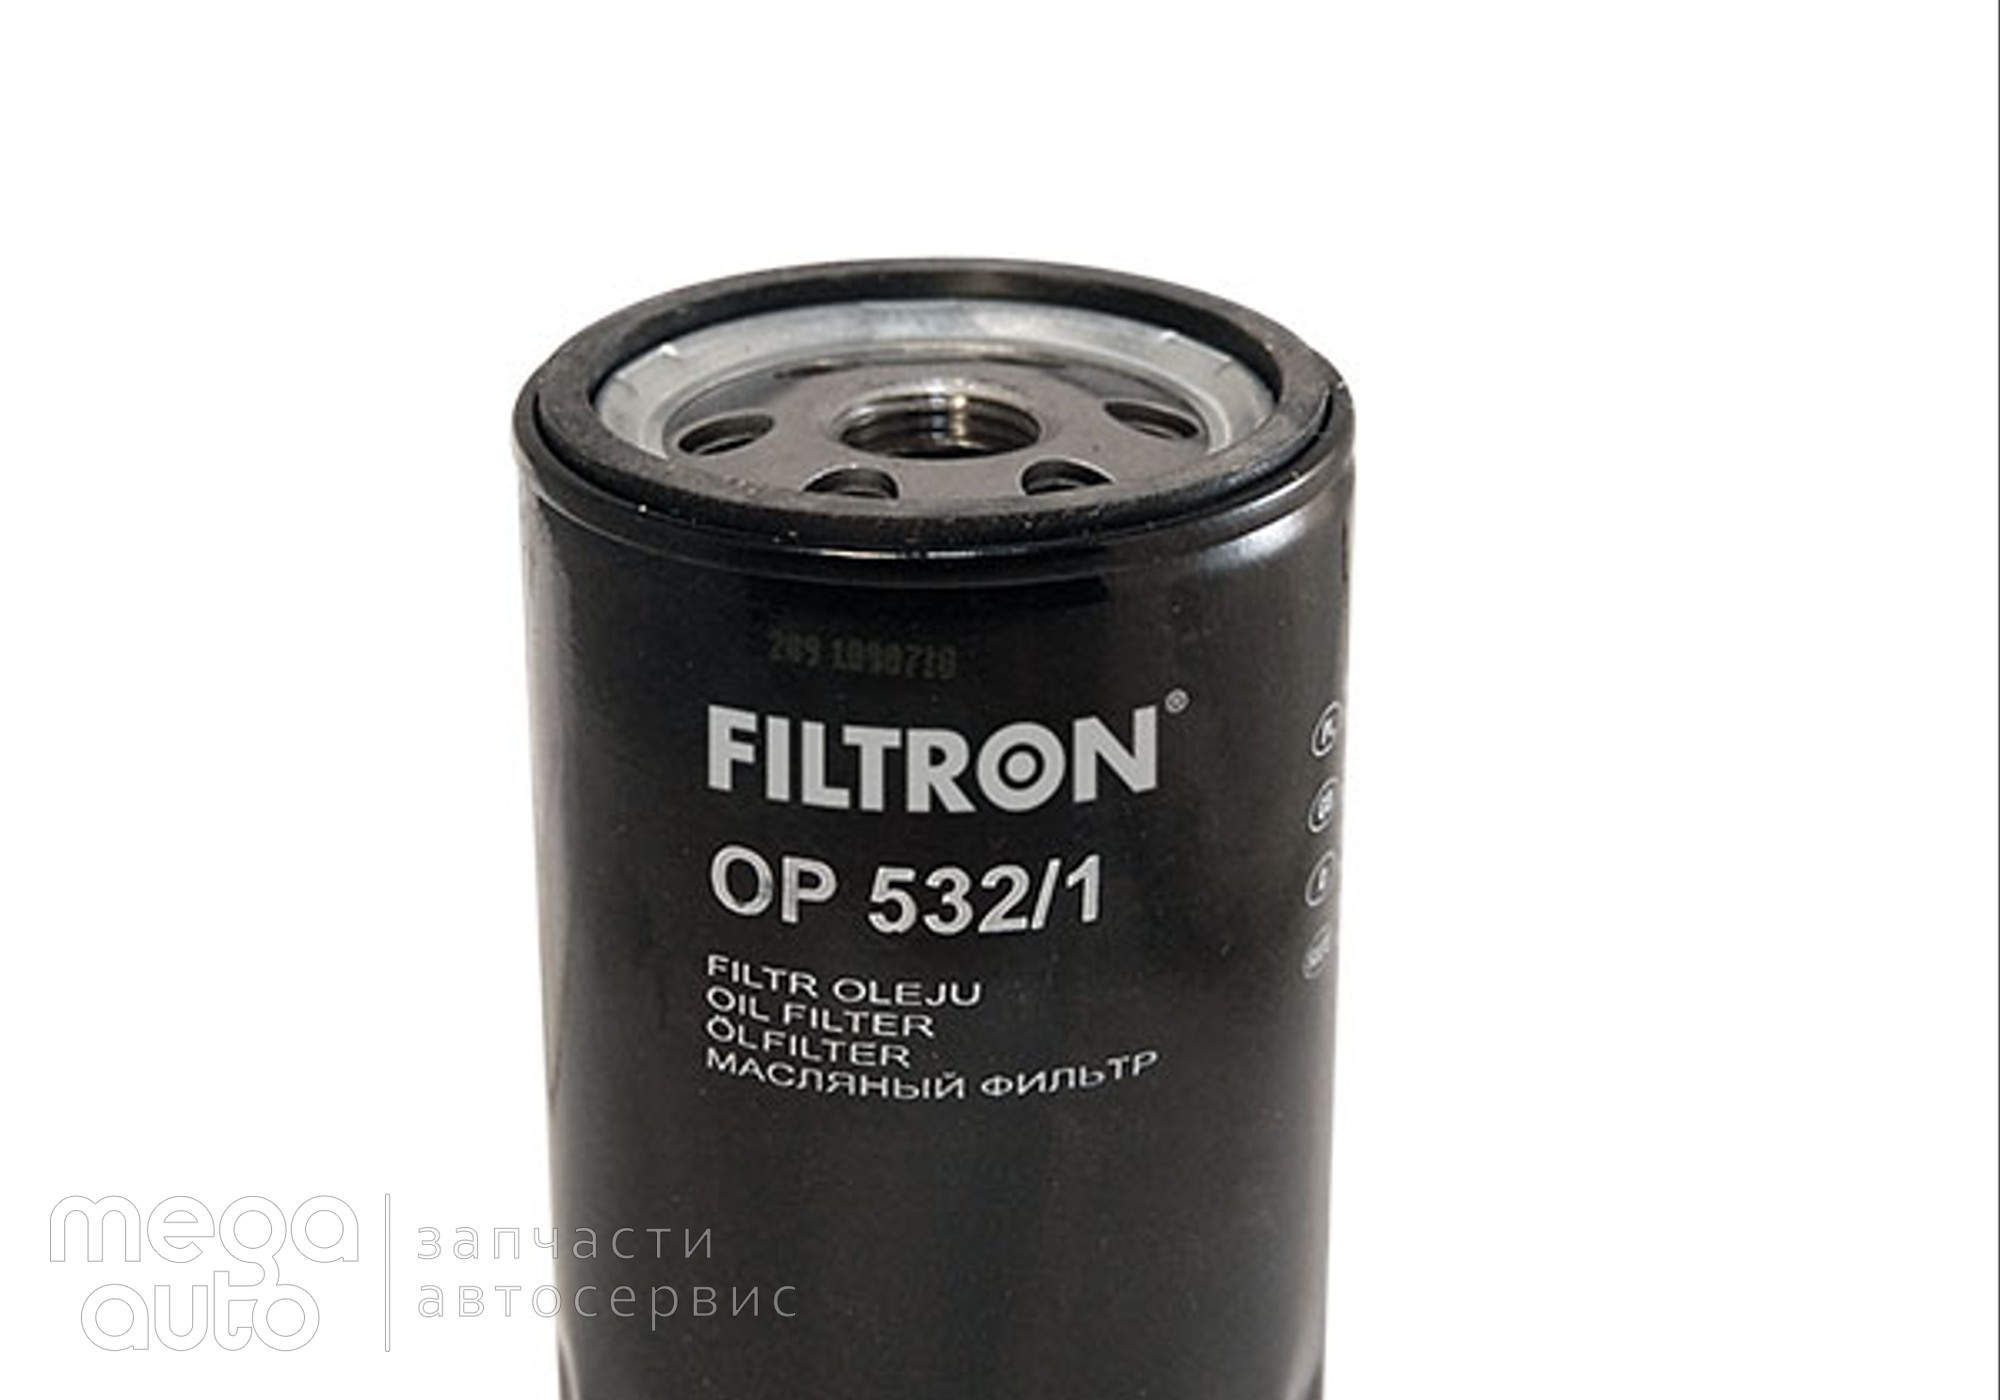 96565412 Масляный фильтр форд мондео, эскорт(Filtron) для Toyota Cynos L44 (с 1988 по 1995)